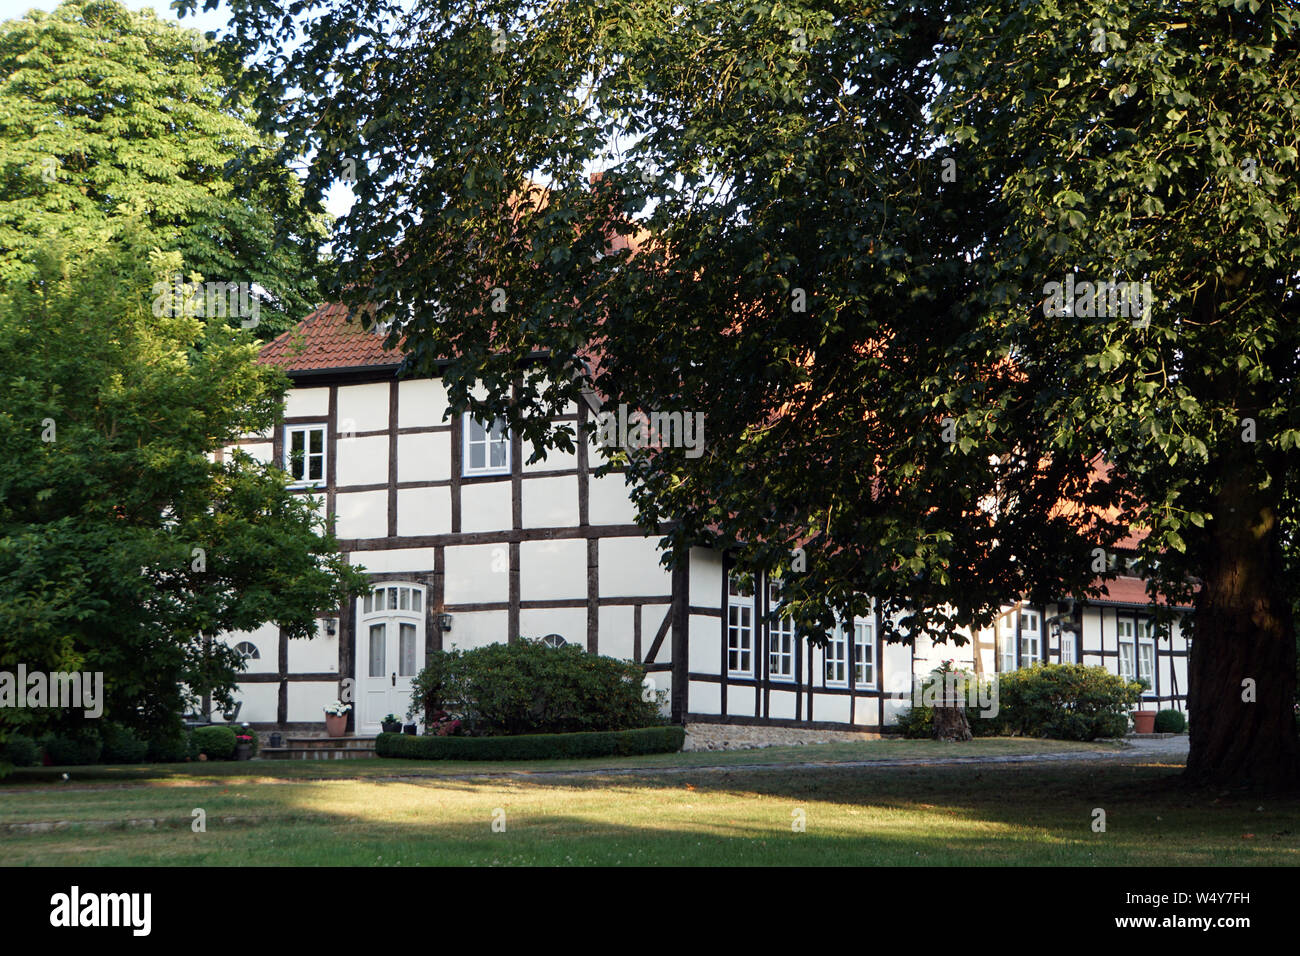 Historisches Gebäude Pforthaus, früher Amtsgericht,heute Wohnhaus, Meinersen, Niedersachsen, Deutschland Foto de stock